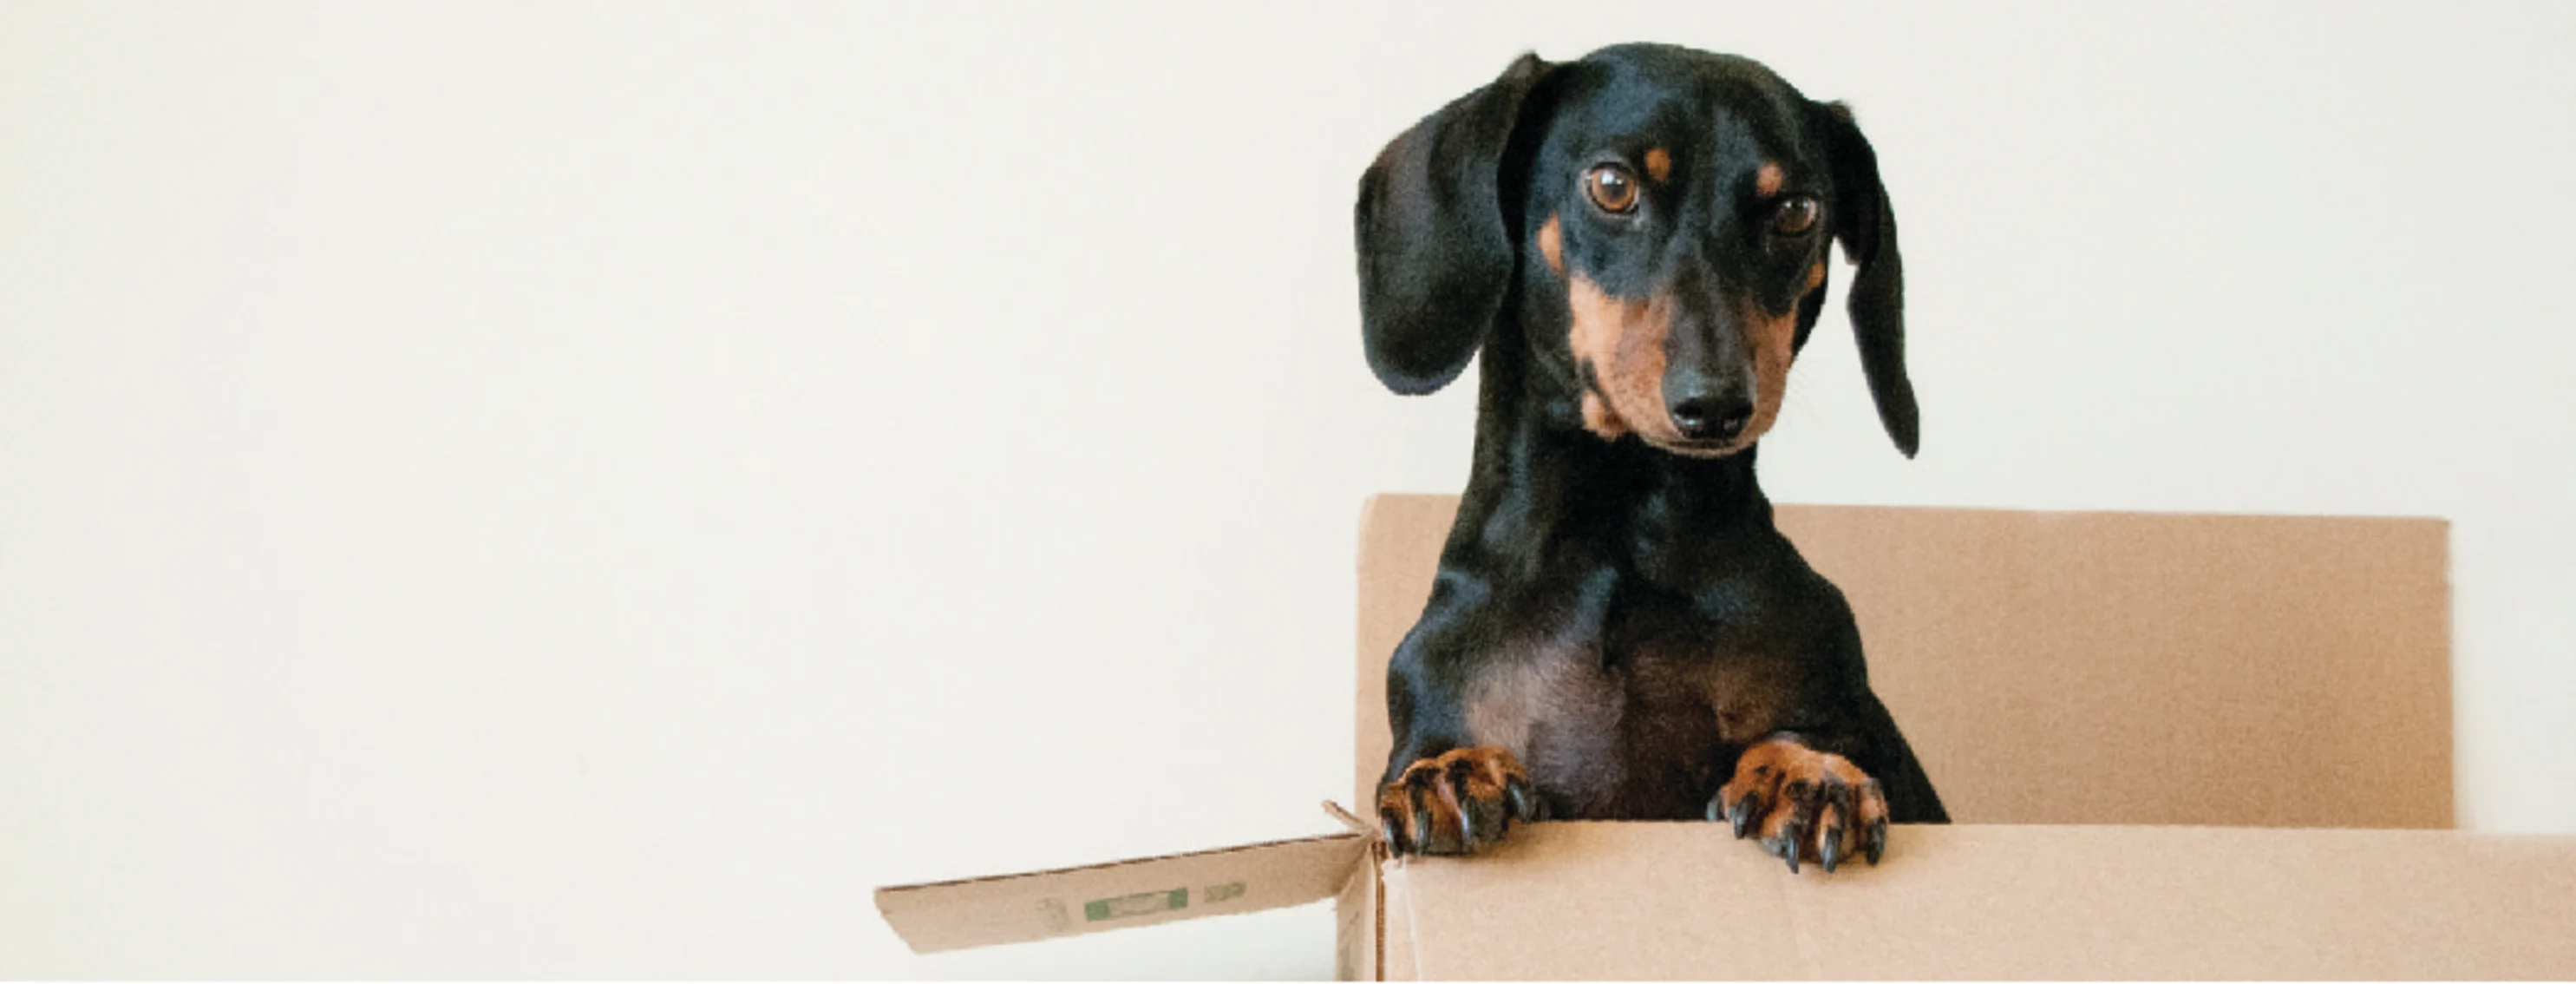 dog in a box 